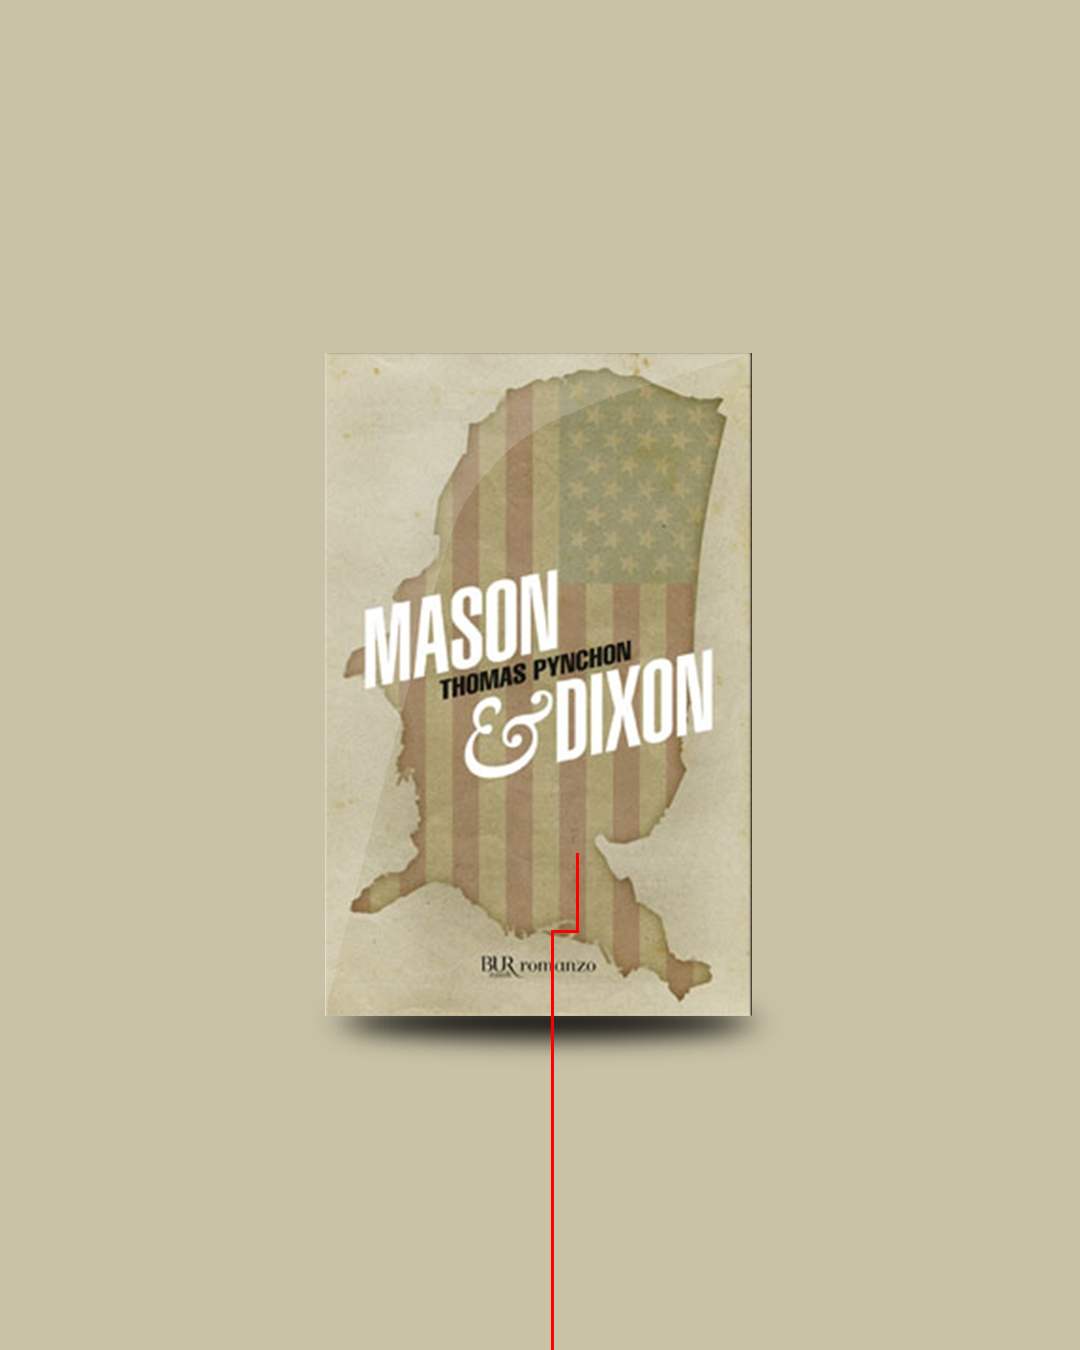 Libri divertenti: Thomas Pynchon, Mason & Dixon. Tra i libri da leggere assolutamente